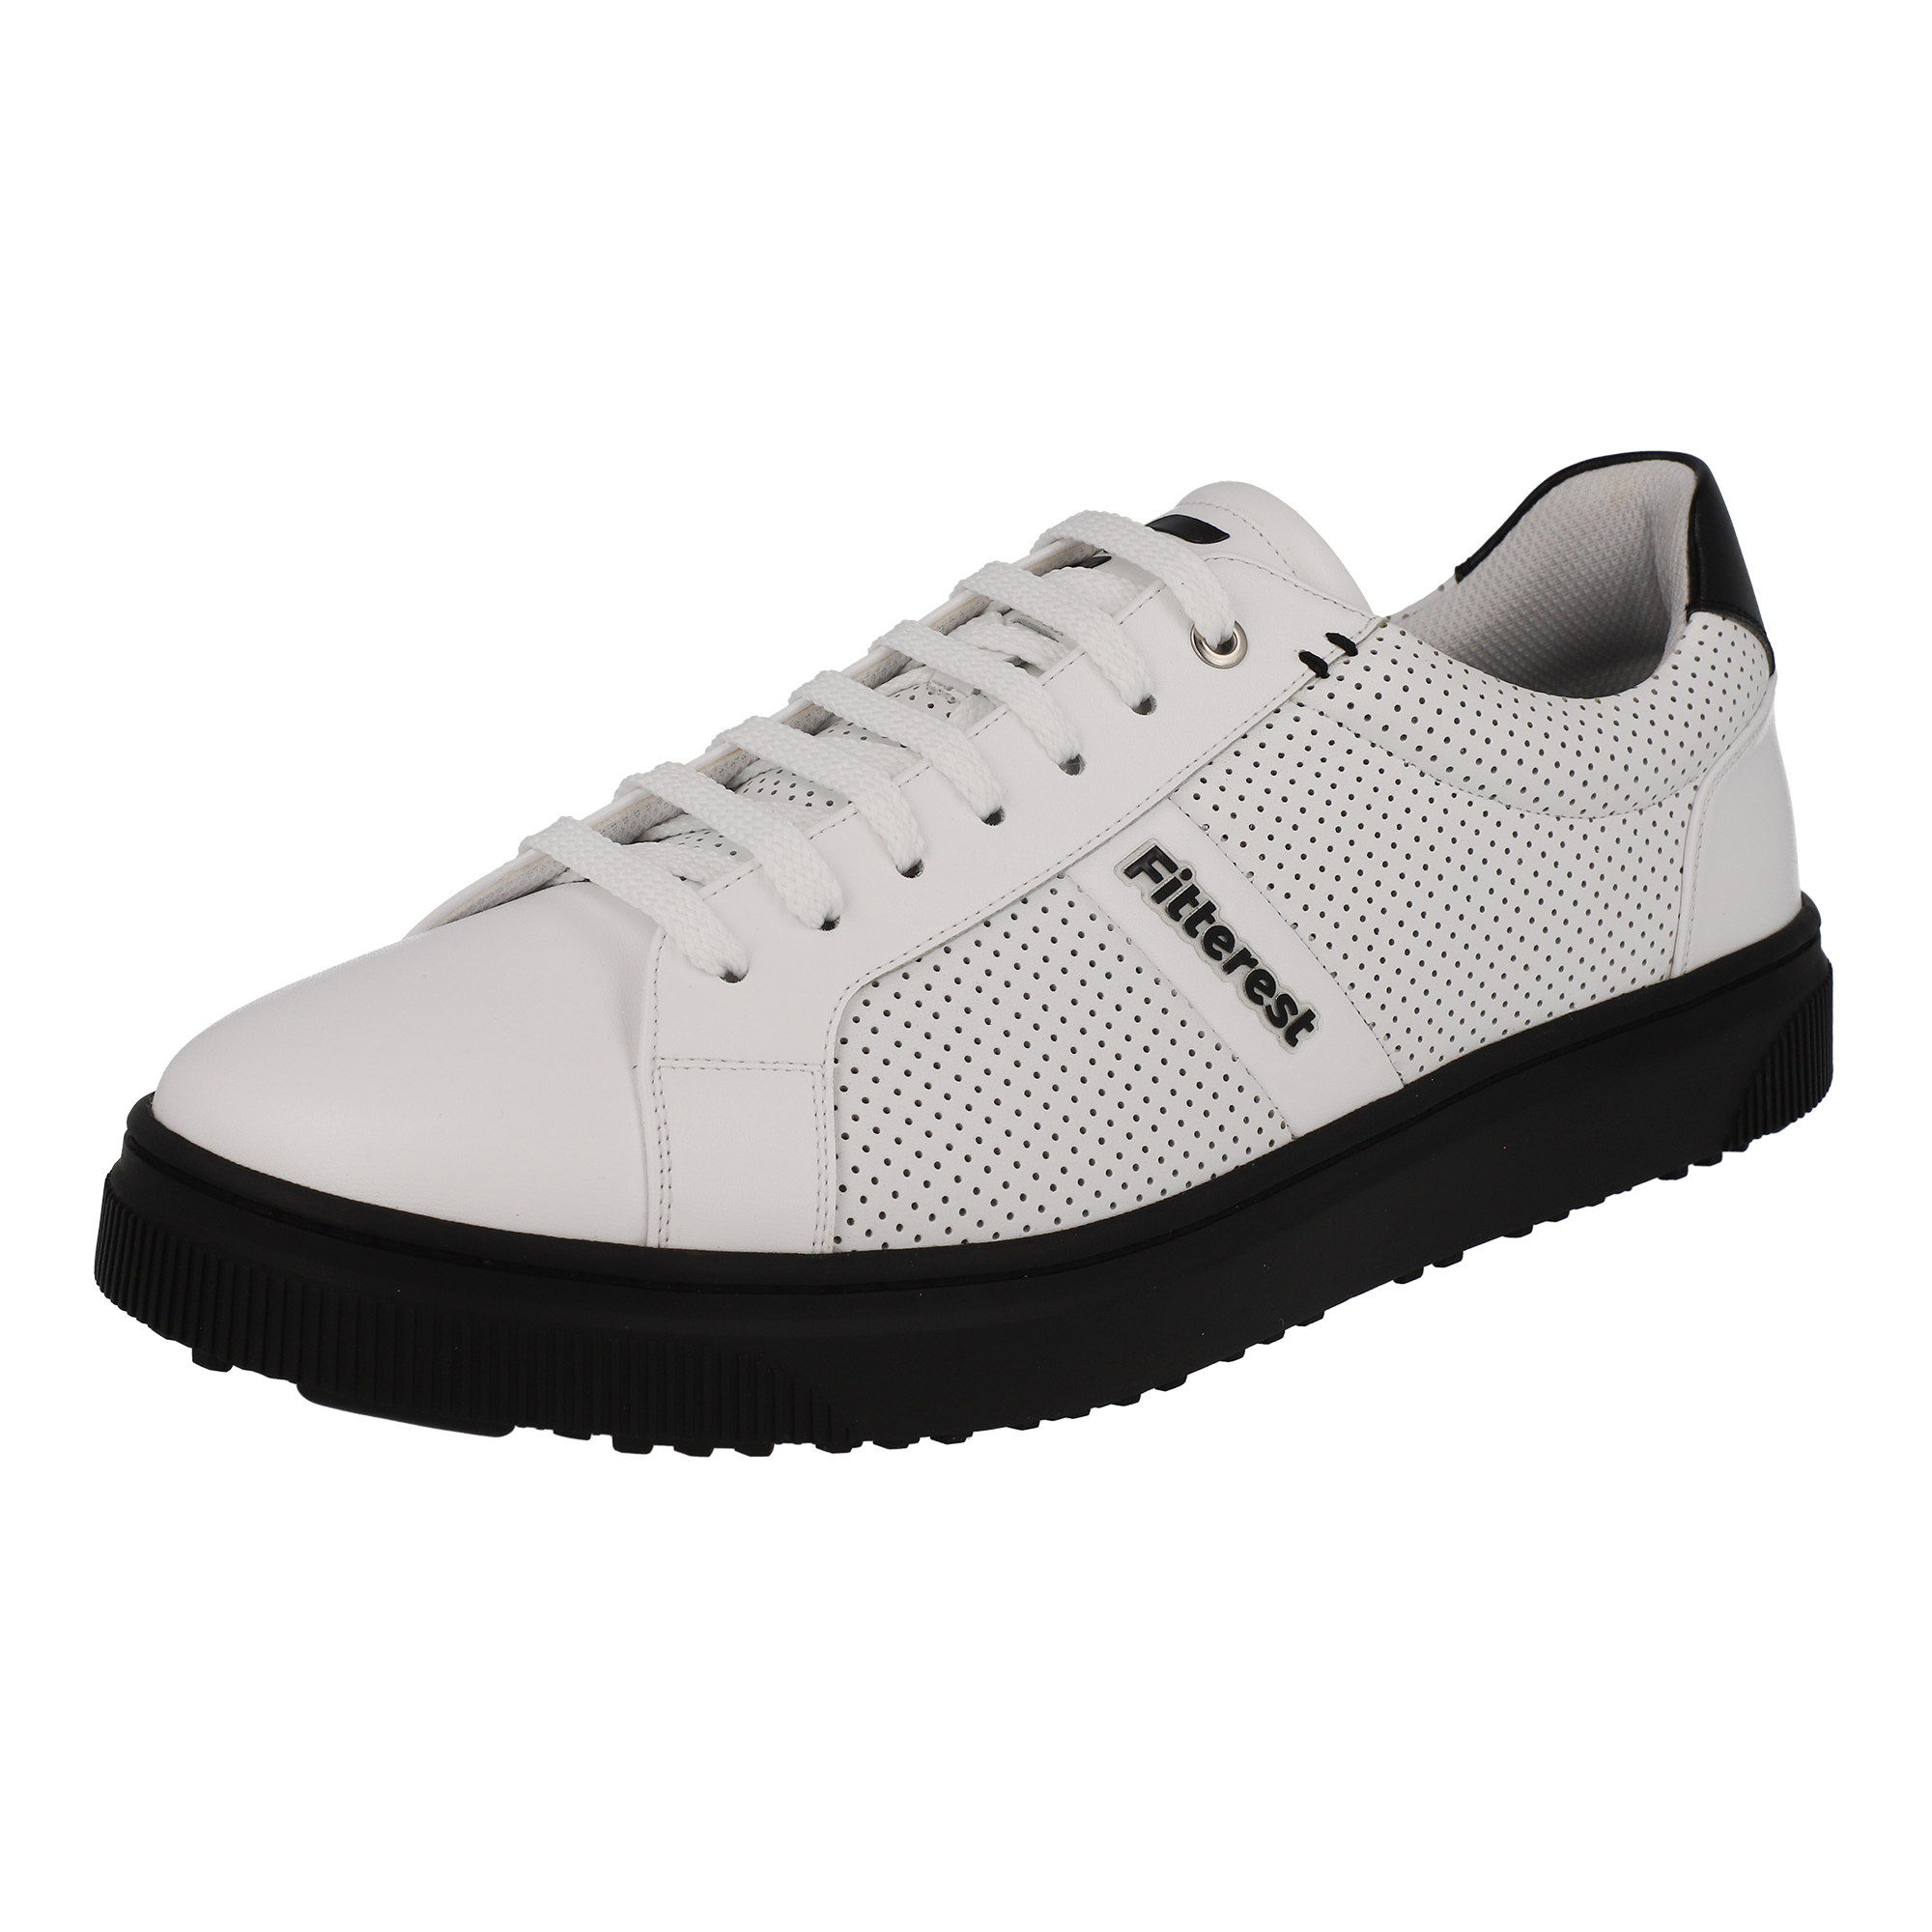 FITTEREST Honeycomb Ground Golf Shoes for Men - FTR24 M405